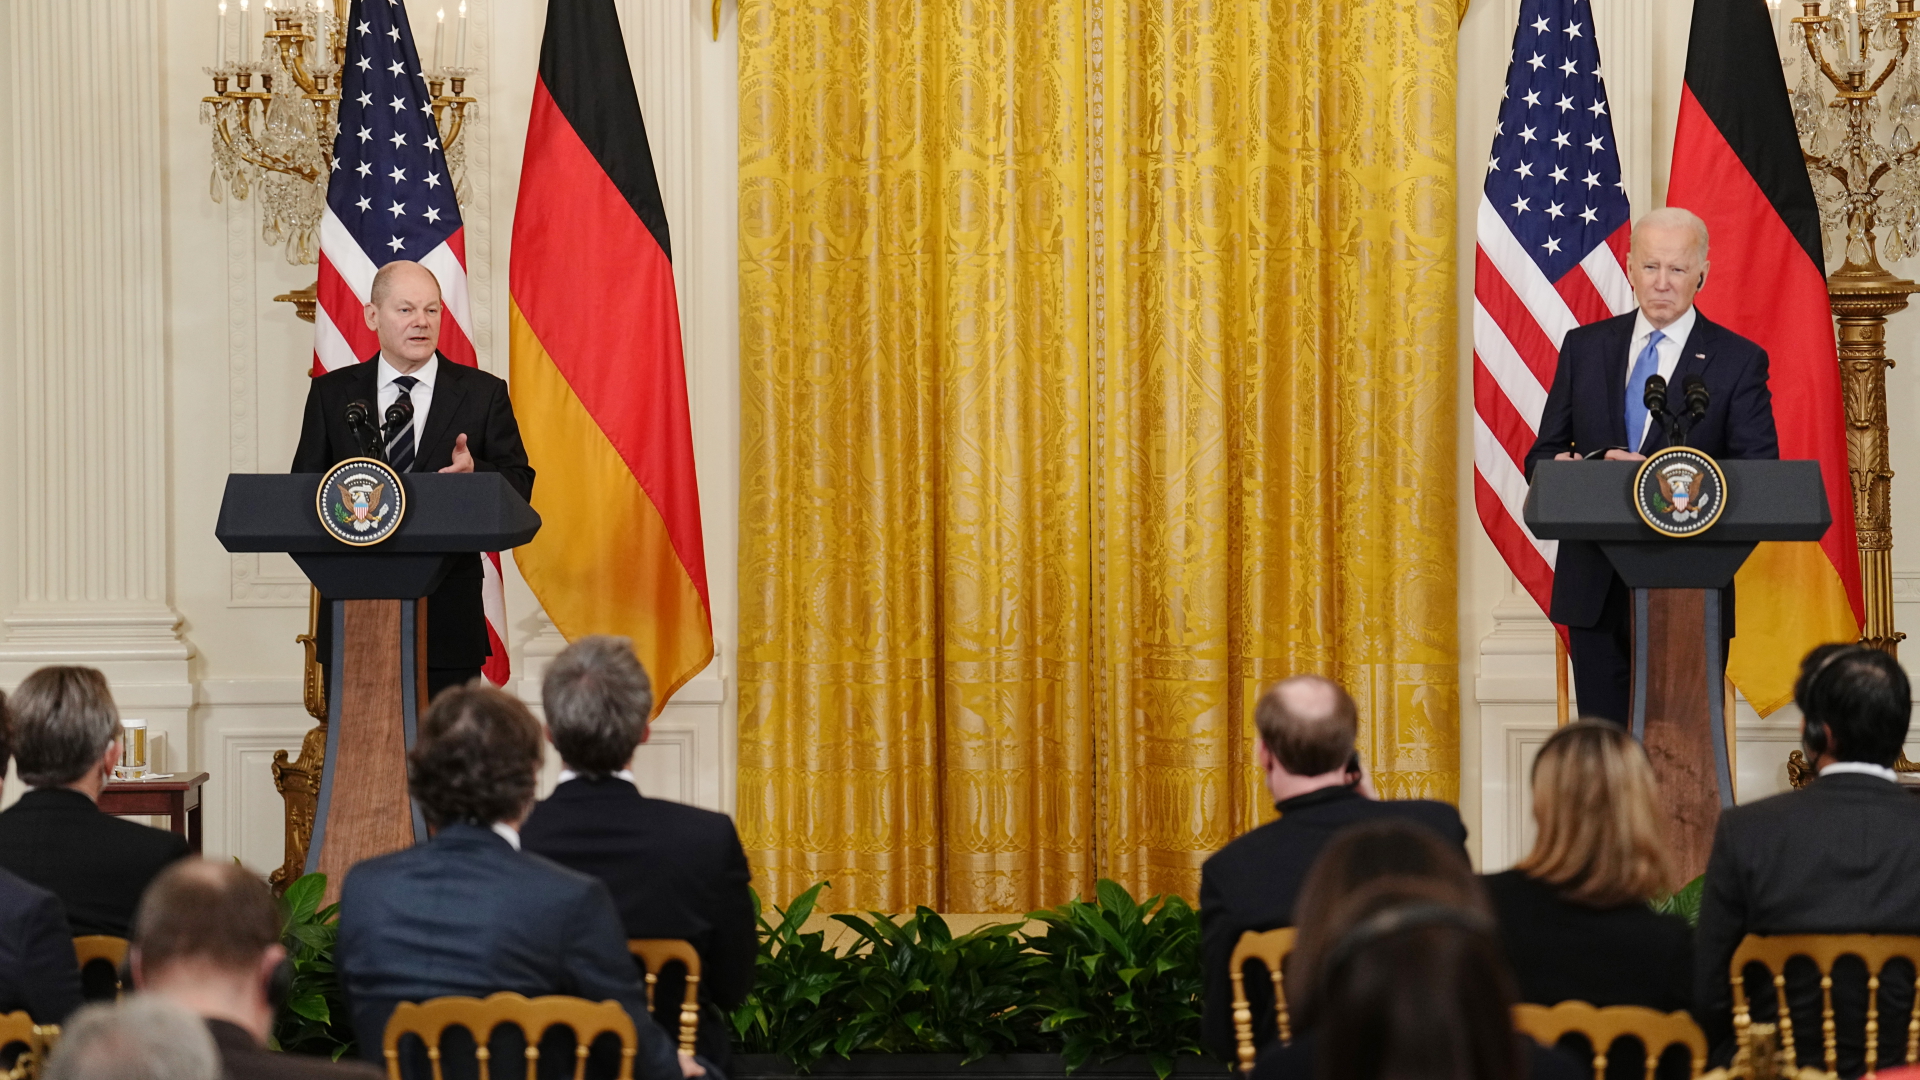 Bundeskanzler Olaf Scholz (SPD, l) und US-Präsident Joe Biden geben eine Pressekonferenz im Weißen Haus. | dpa